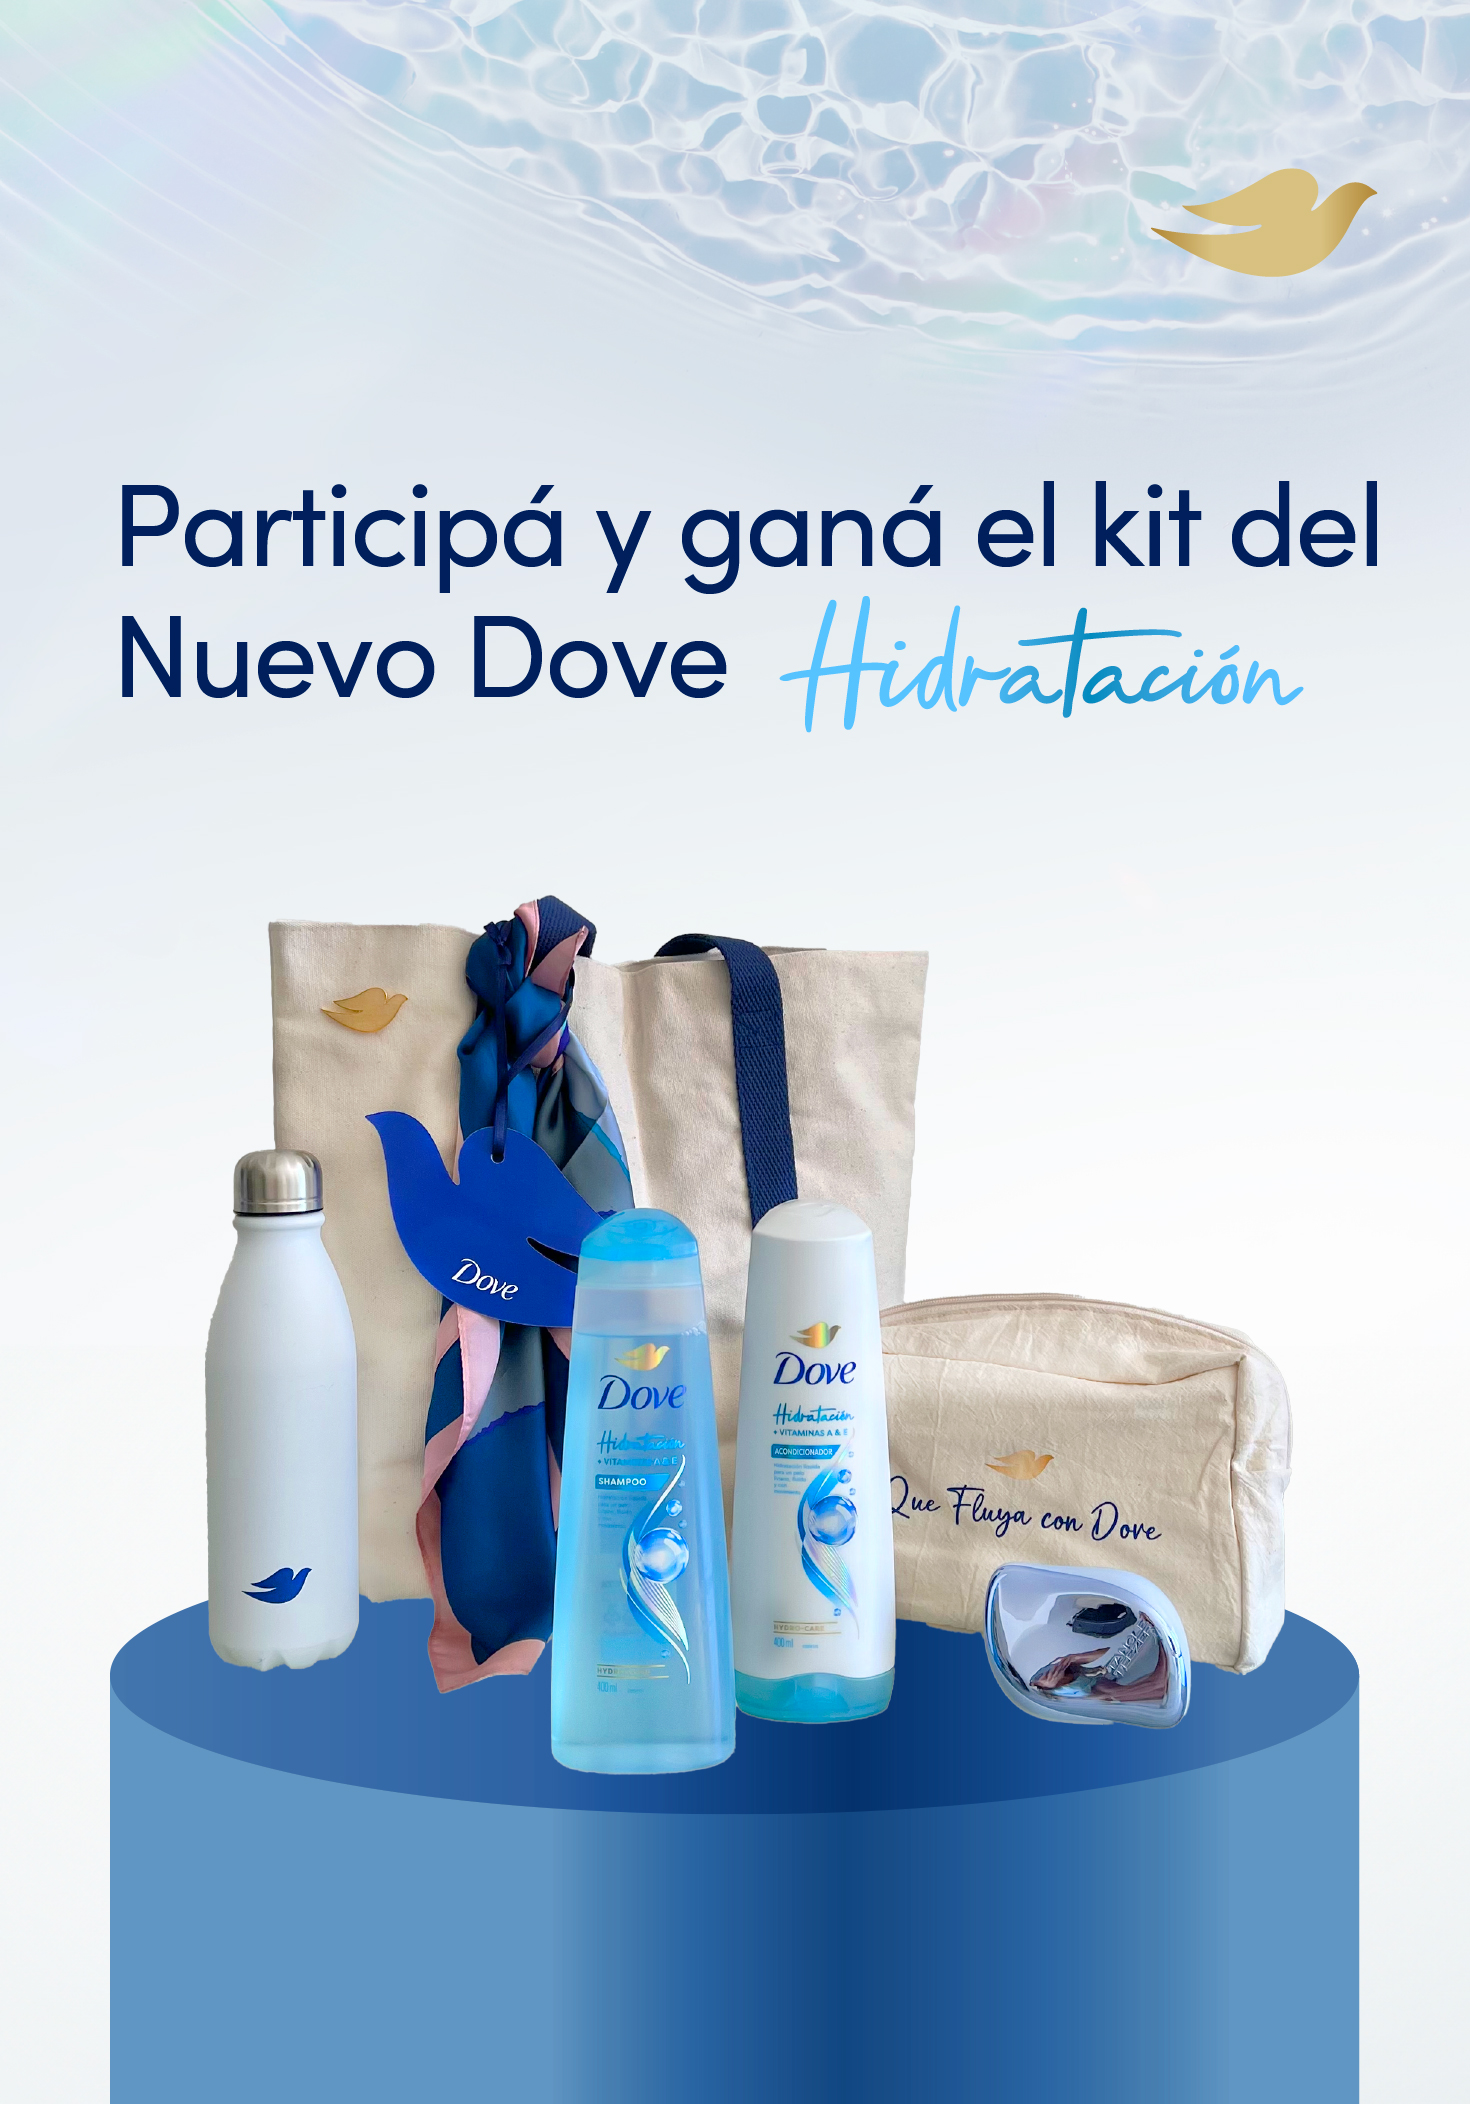 ¡Ganate el kit del Nuevo Dove Hidratación!